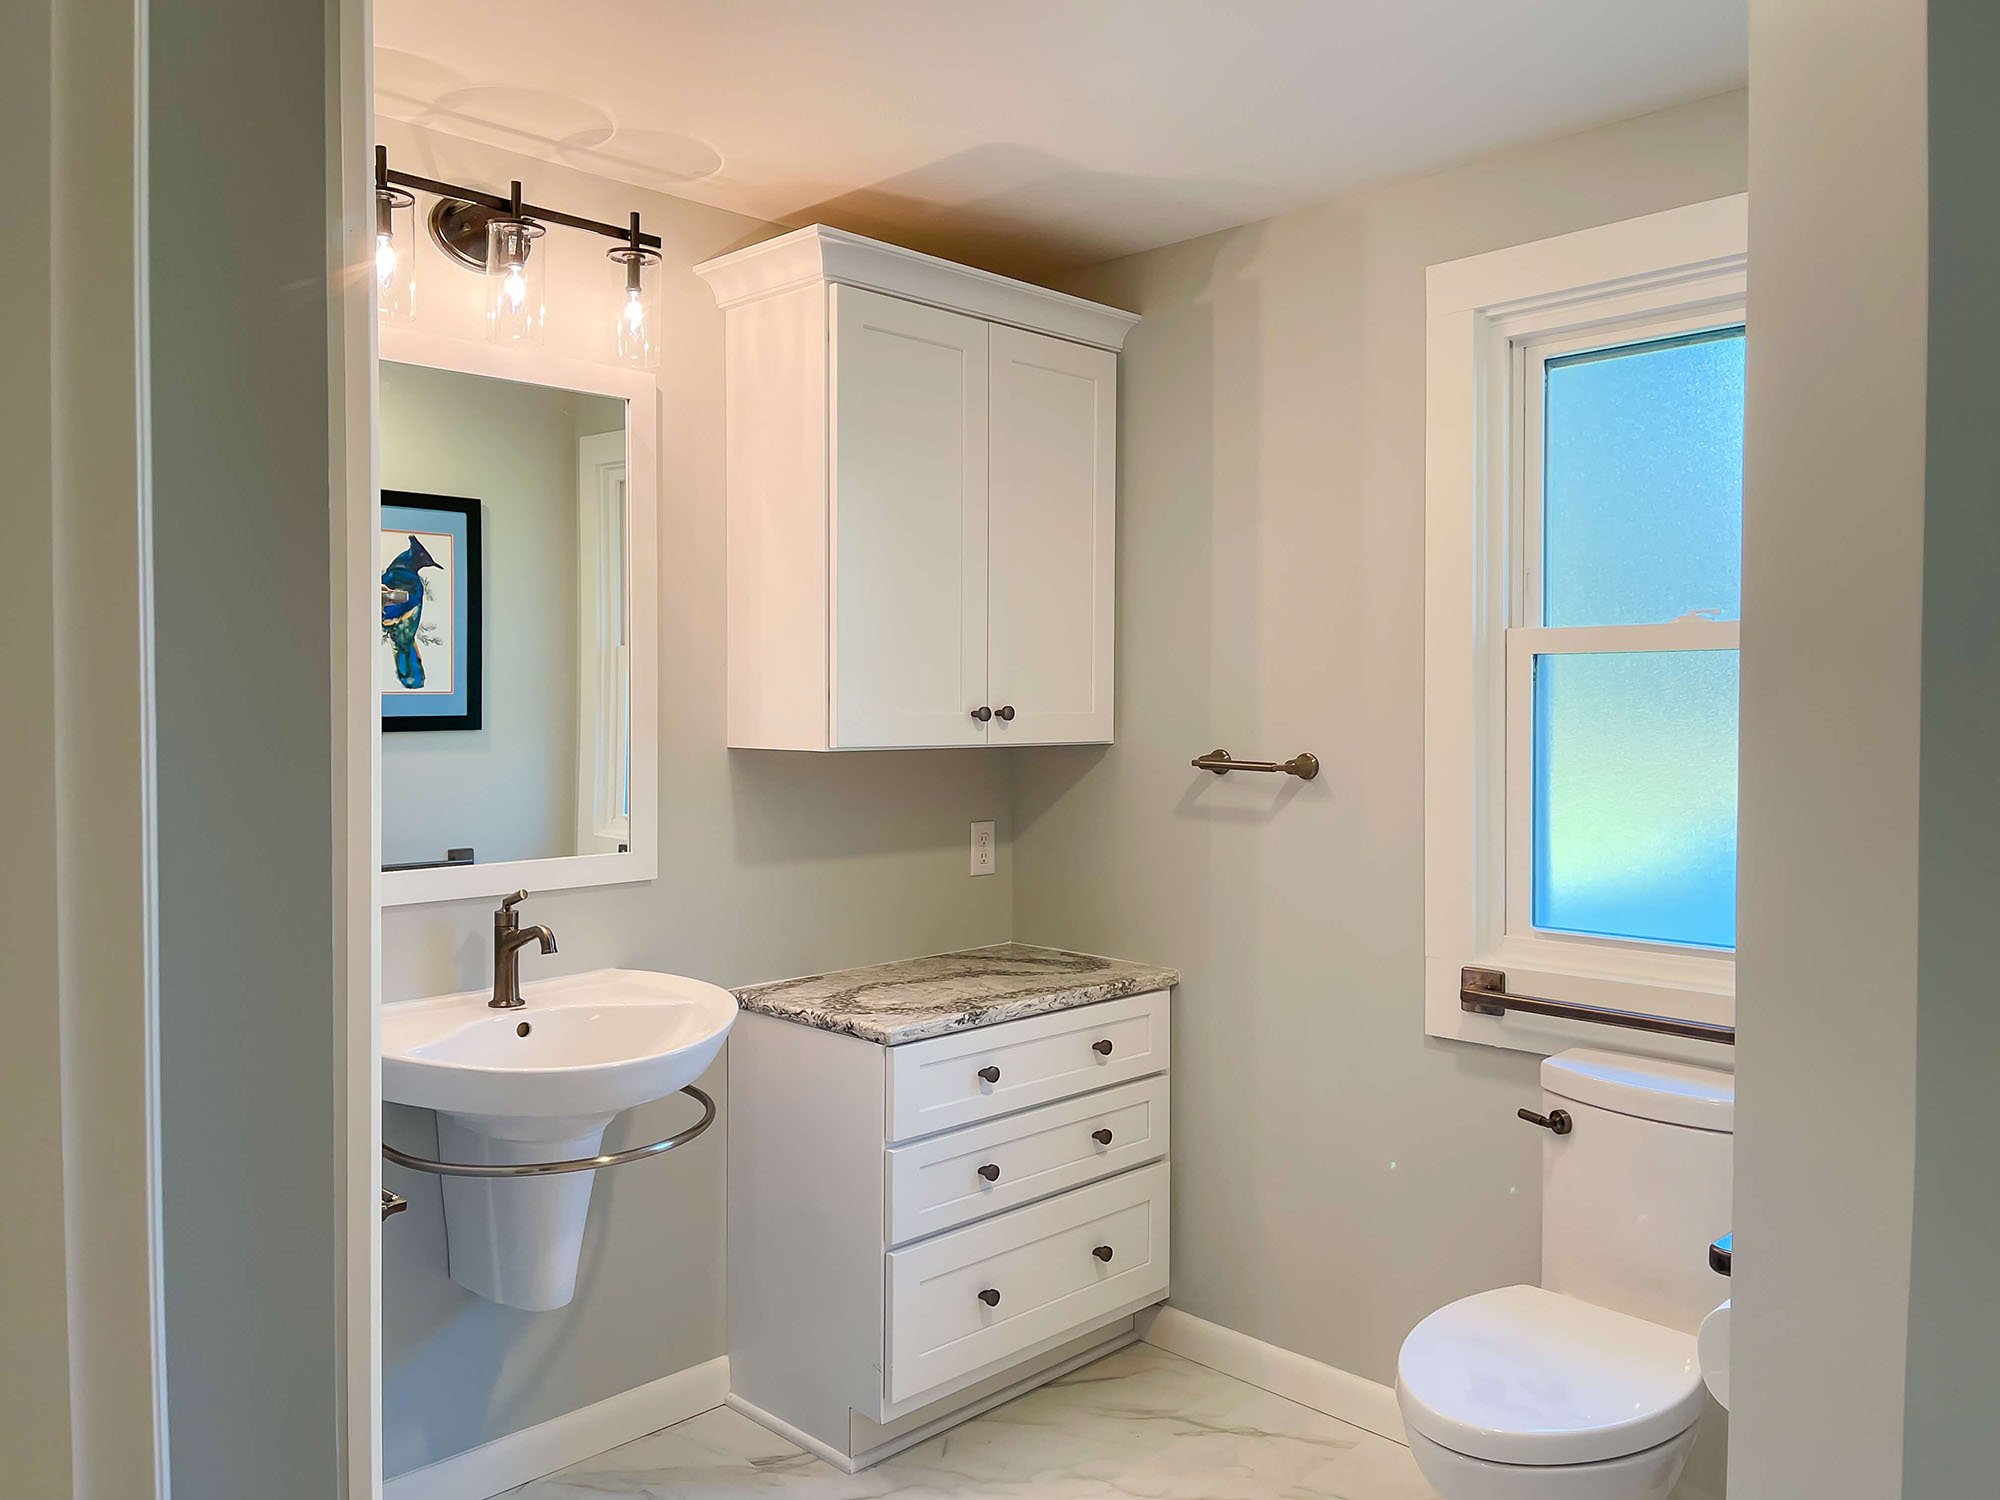 bathroom-remodel-gray-walls